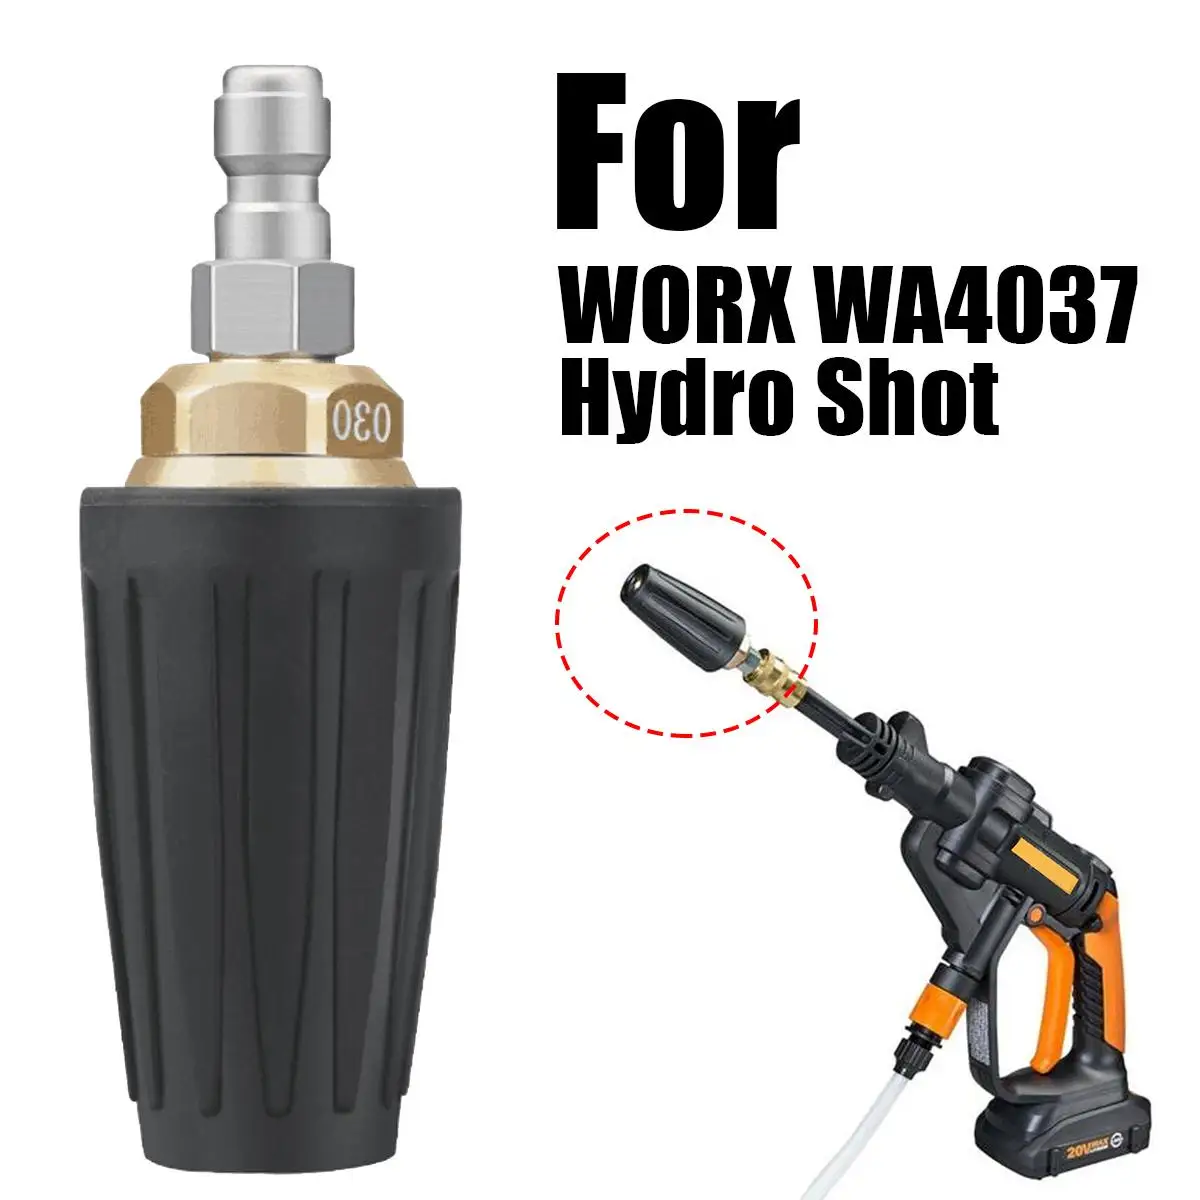 Worx wa4037 Turbo accessoire de buse hydroshot